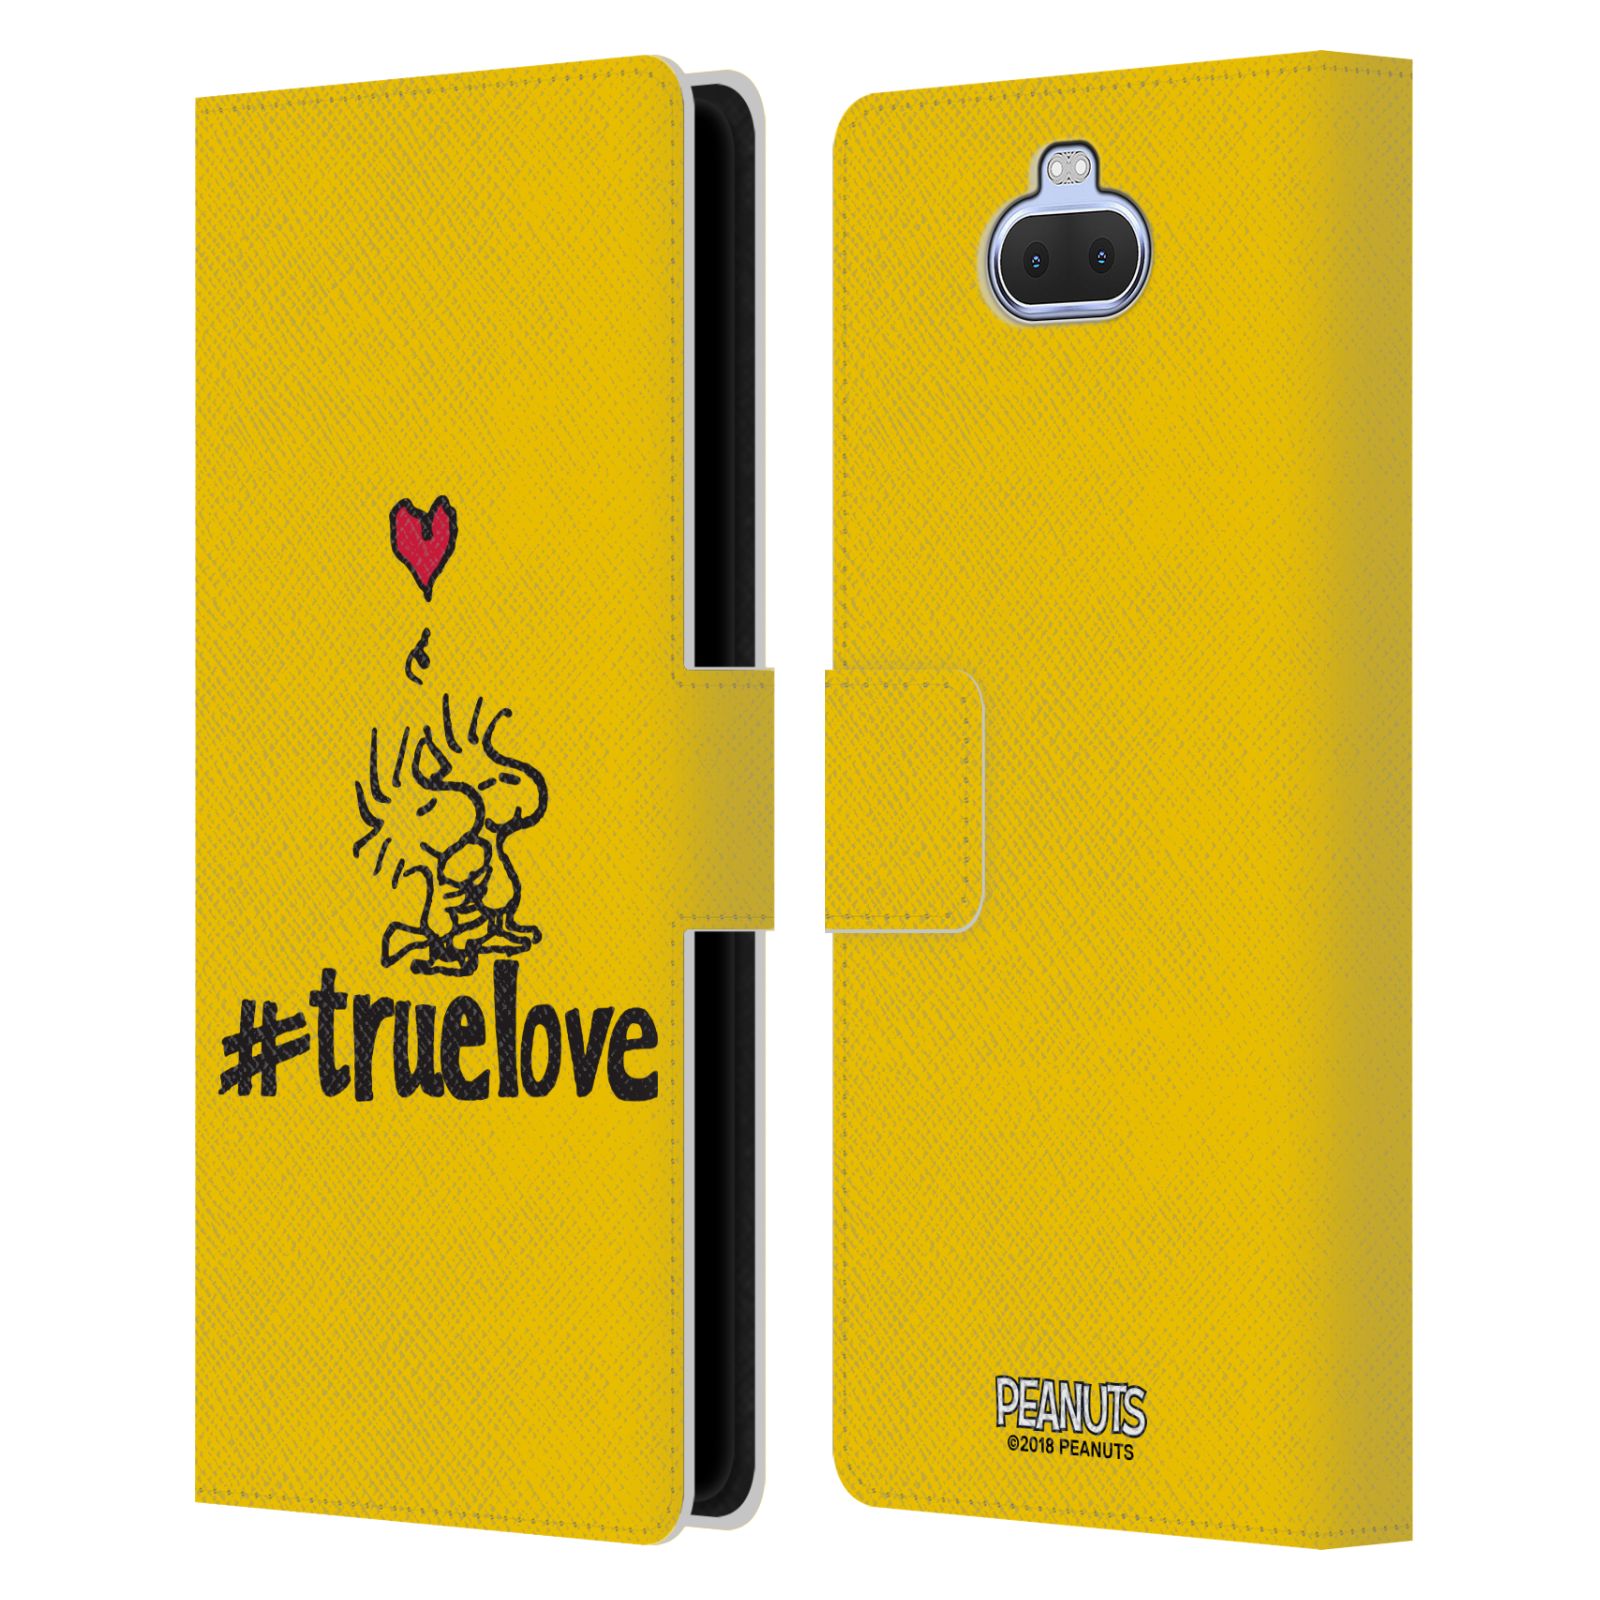 Pouzdro na mobil Sony Xperia 10 PLUS  - HEAD CASE - Peanuts - Woodstock pravá láska